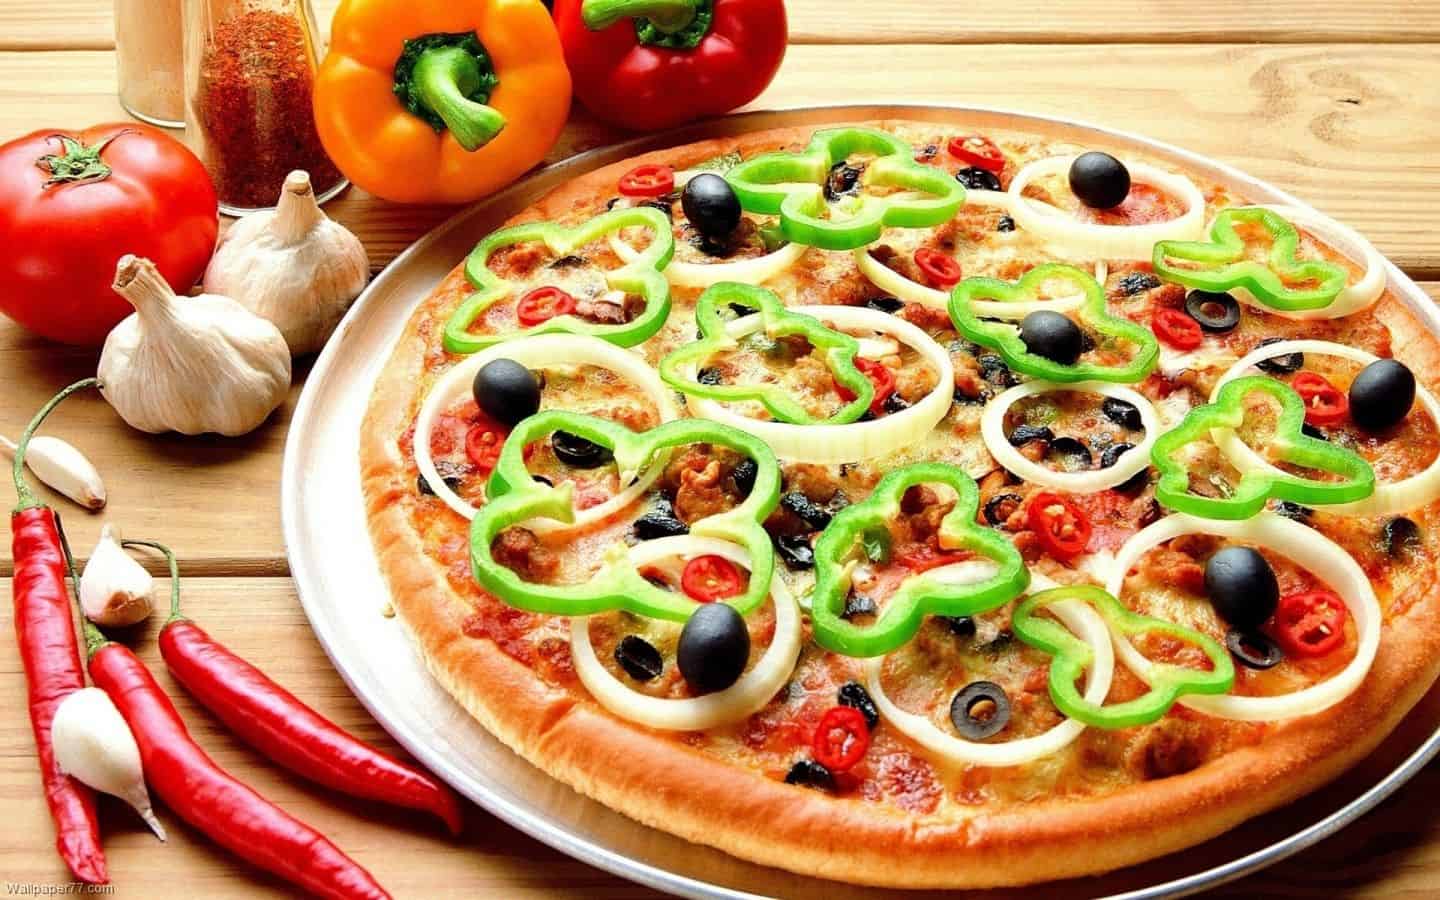 طريقة عمل البيتزا السريعة بالفراخ في البيت وتحضيرها في عشرين دقيقة لعام 2021